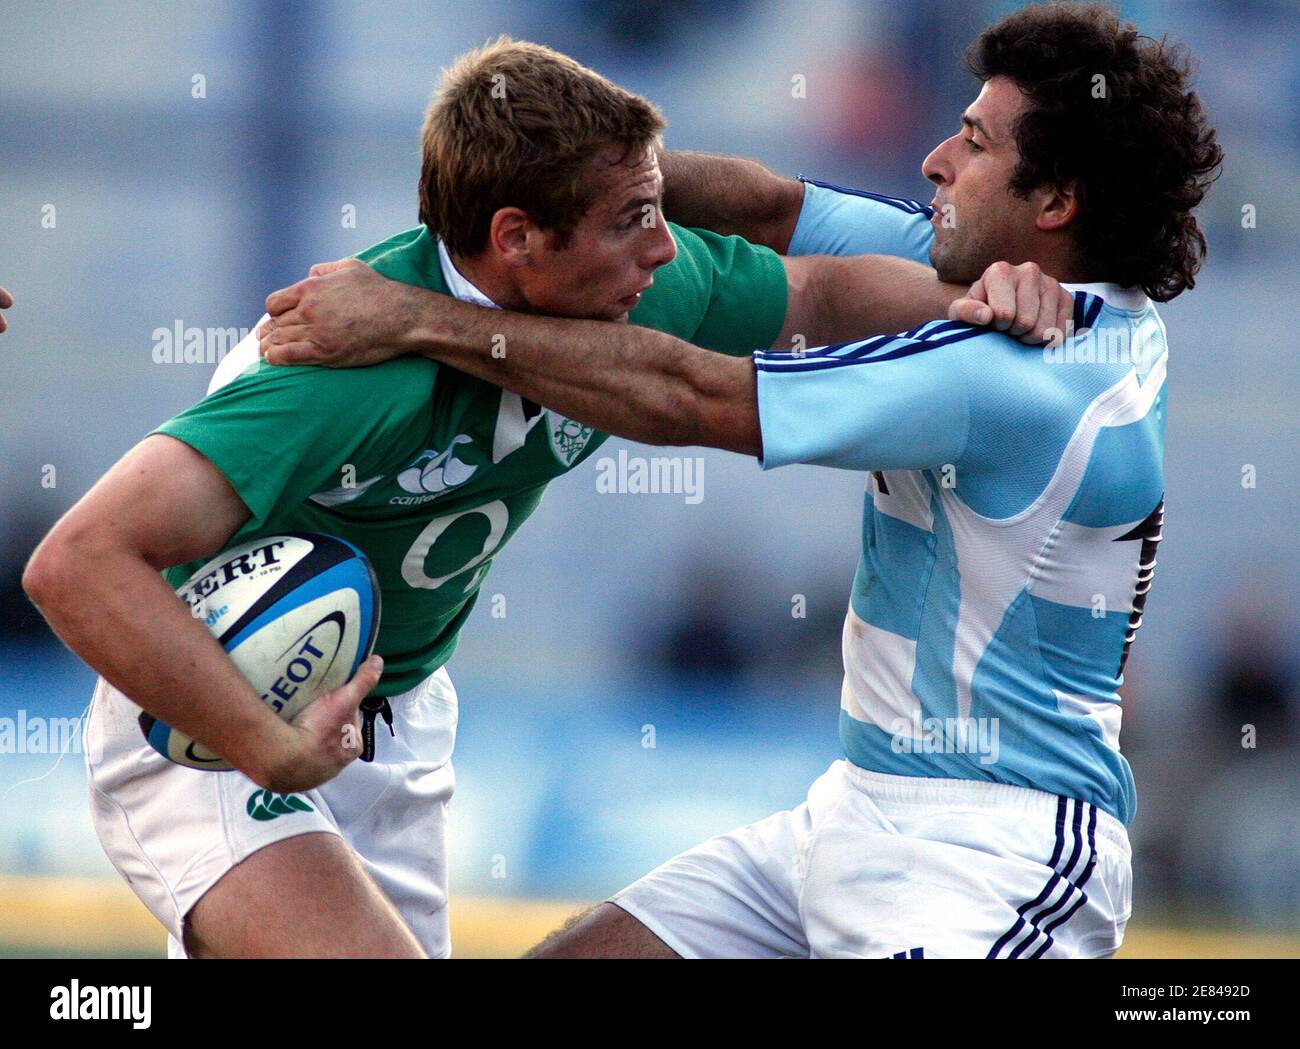 Hernan Senilosa (R) la Argentina los Pumas a Gavin Duffy de Irlanda durante su de rugby en Buenos Aires 2 de junio de 2007. REUTERS/Enrique Marcarian (ARGENTINA Fotografía